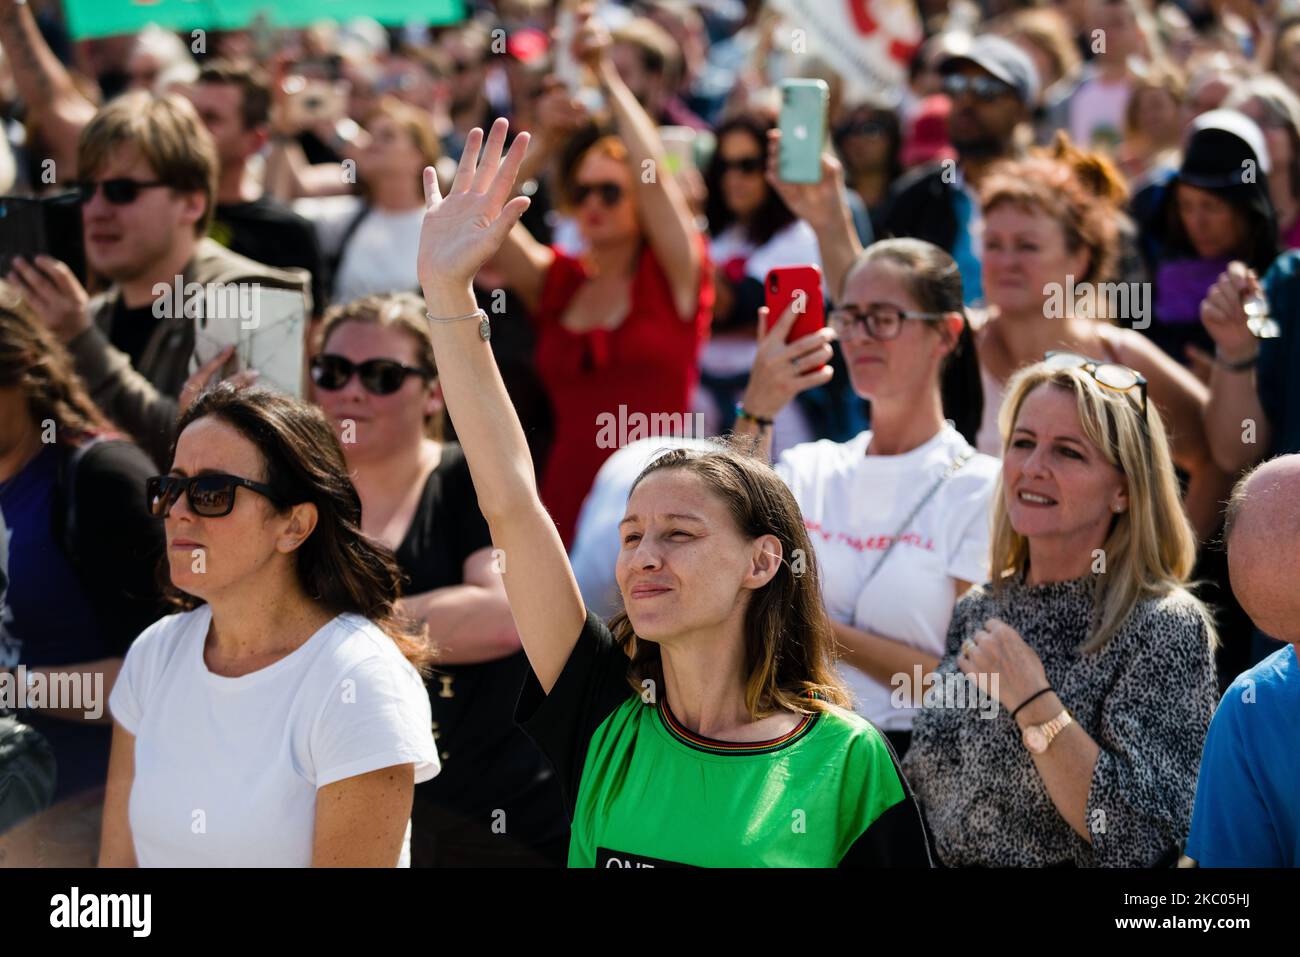 Des milliers de manifestants anti-VAX se réunissent à Trafalgar Square contre les restrictions de verrouillage, le port de masque et la proposition de vaccin à Londres, en Grande-Bretagne, le 19 septembre 2020. (Photo de Maciek Musialek/NurPhoto) Banque D'Images